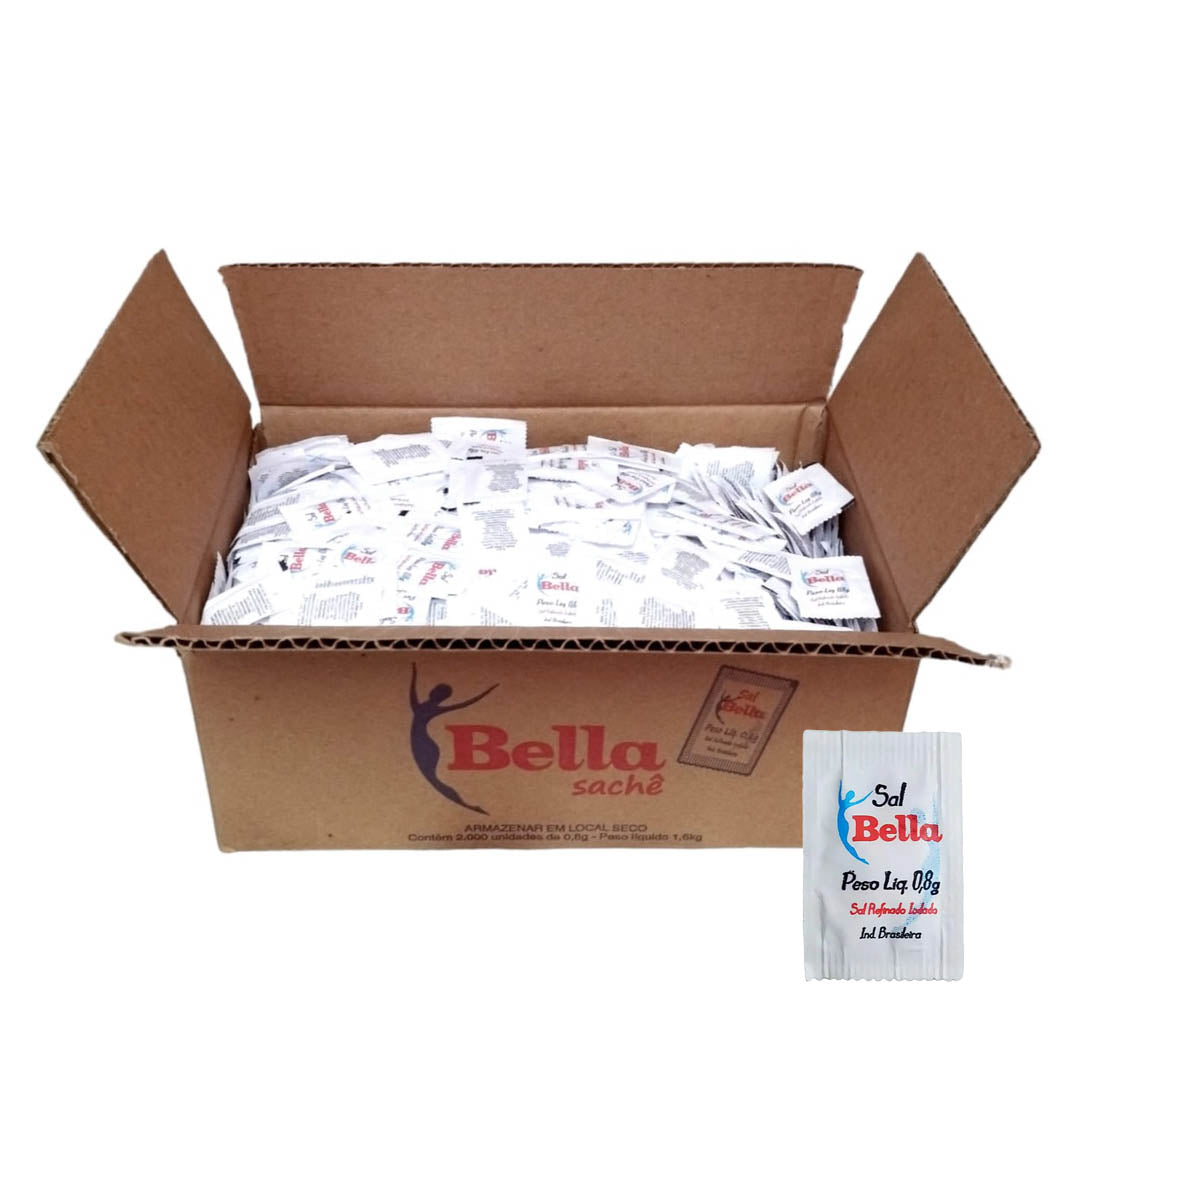 Caixa de Sal sachê 0,8g com 2.000 unidades Bella 1,6kg – Leme